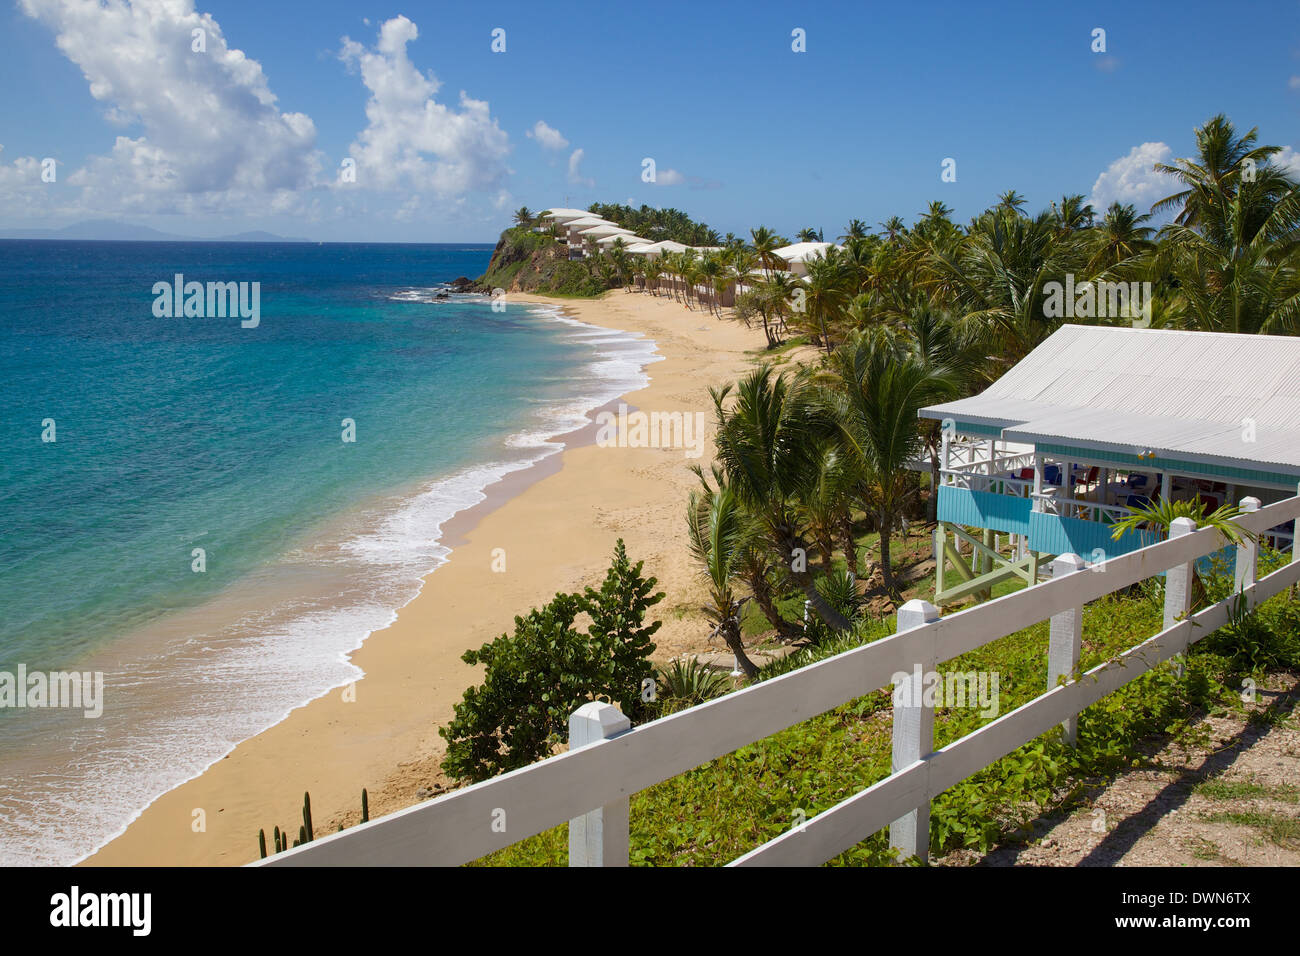 Grace Bay et de la plage, Sainte Marie, Antigua, Iles sous le vent, Antilles, Caraïbes, Amérique Centrale Banque D'Images